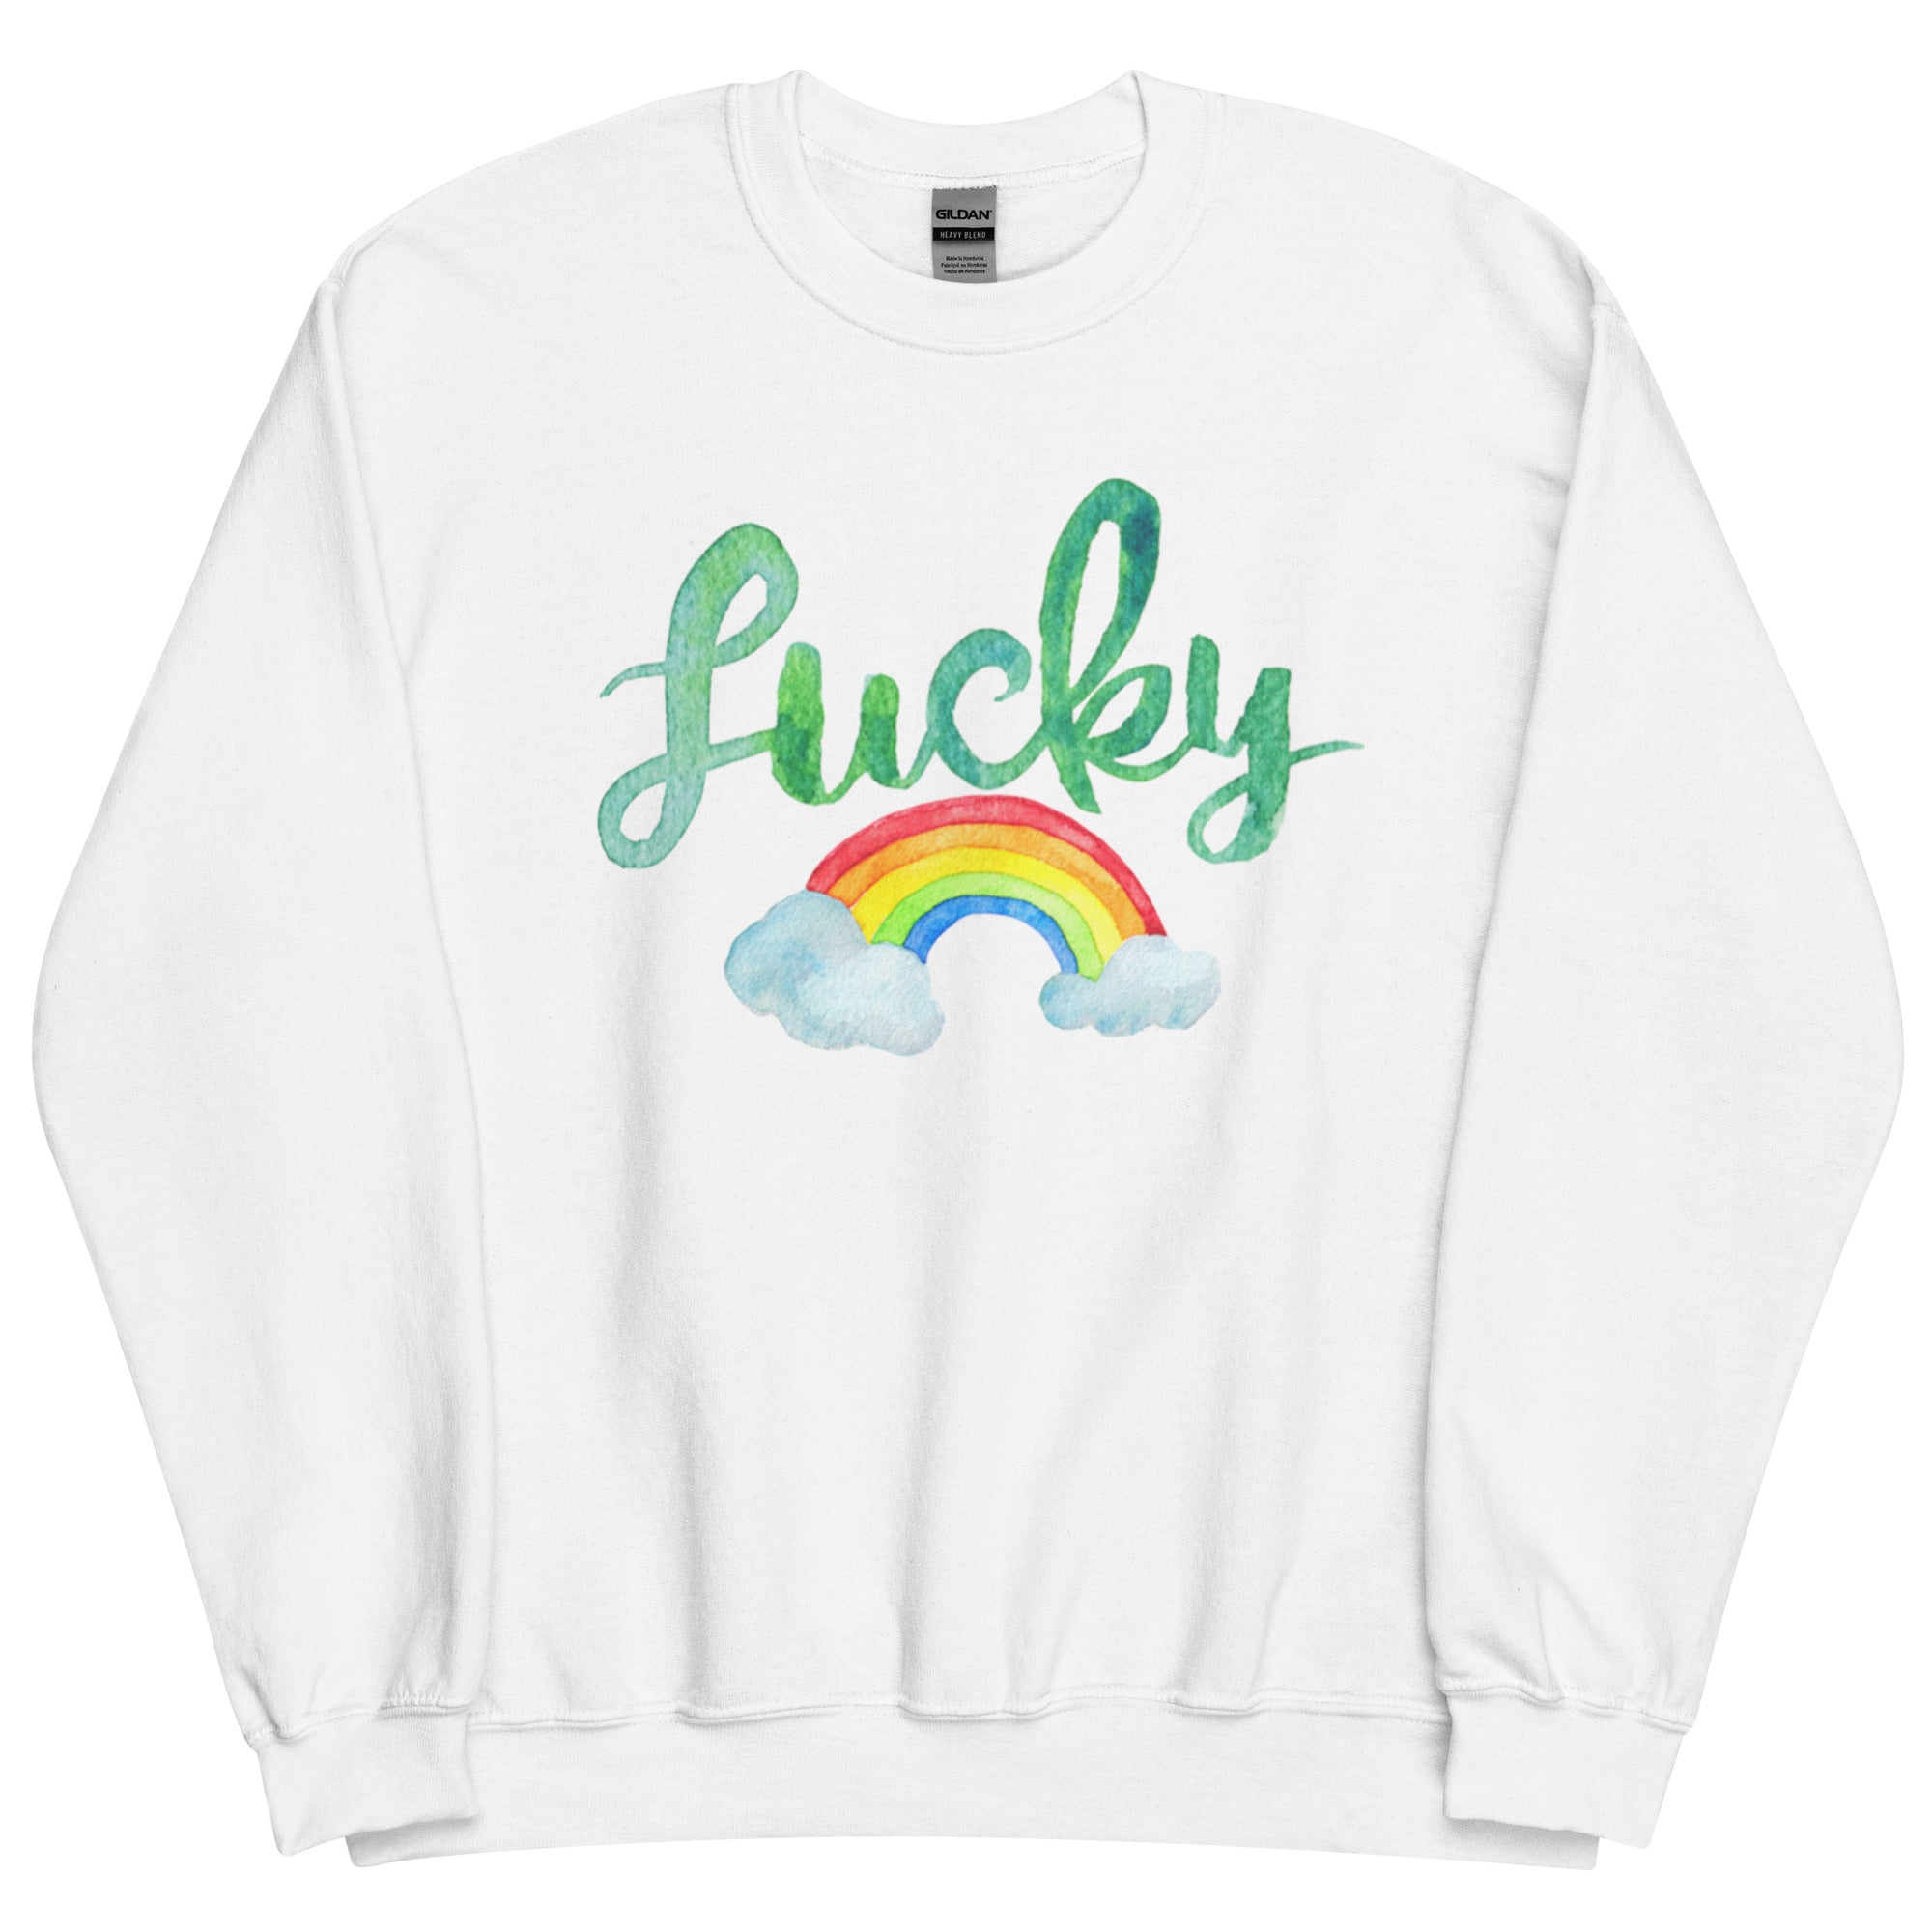 Lucky Sweatshirt